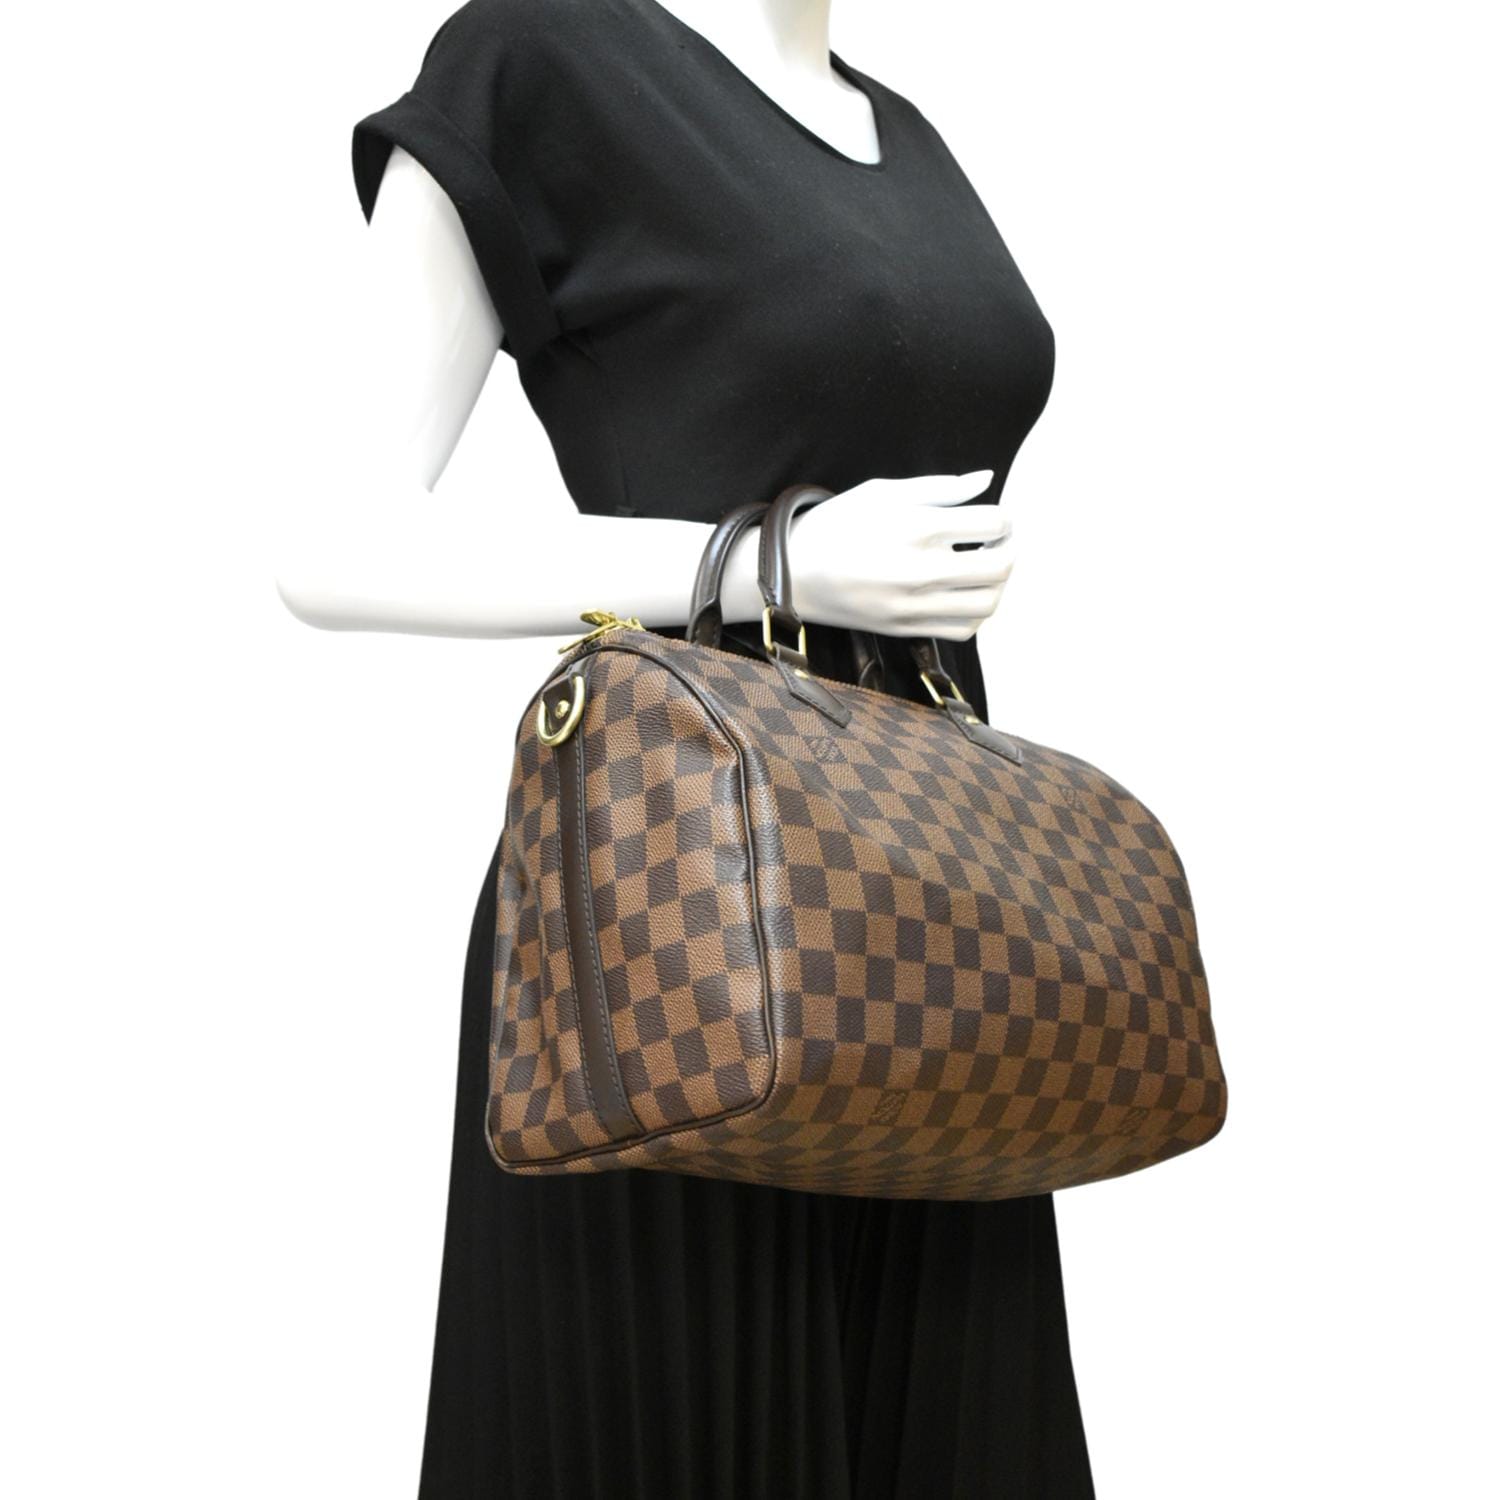 Louis Vuitton Speedy 30 Bandouliere Shoulder Bag